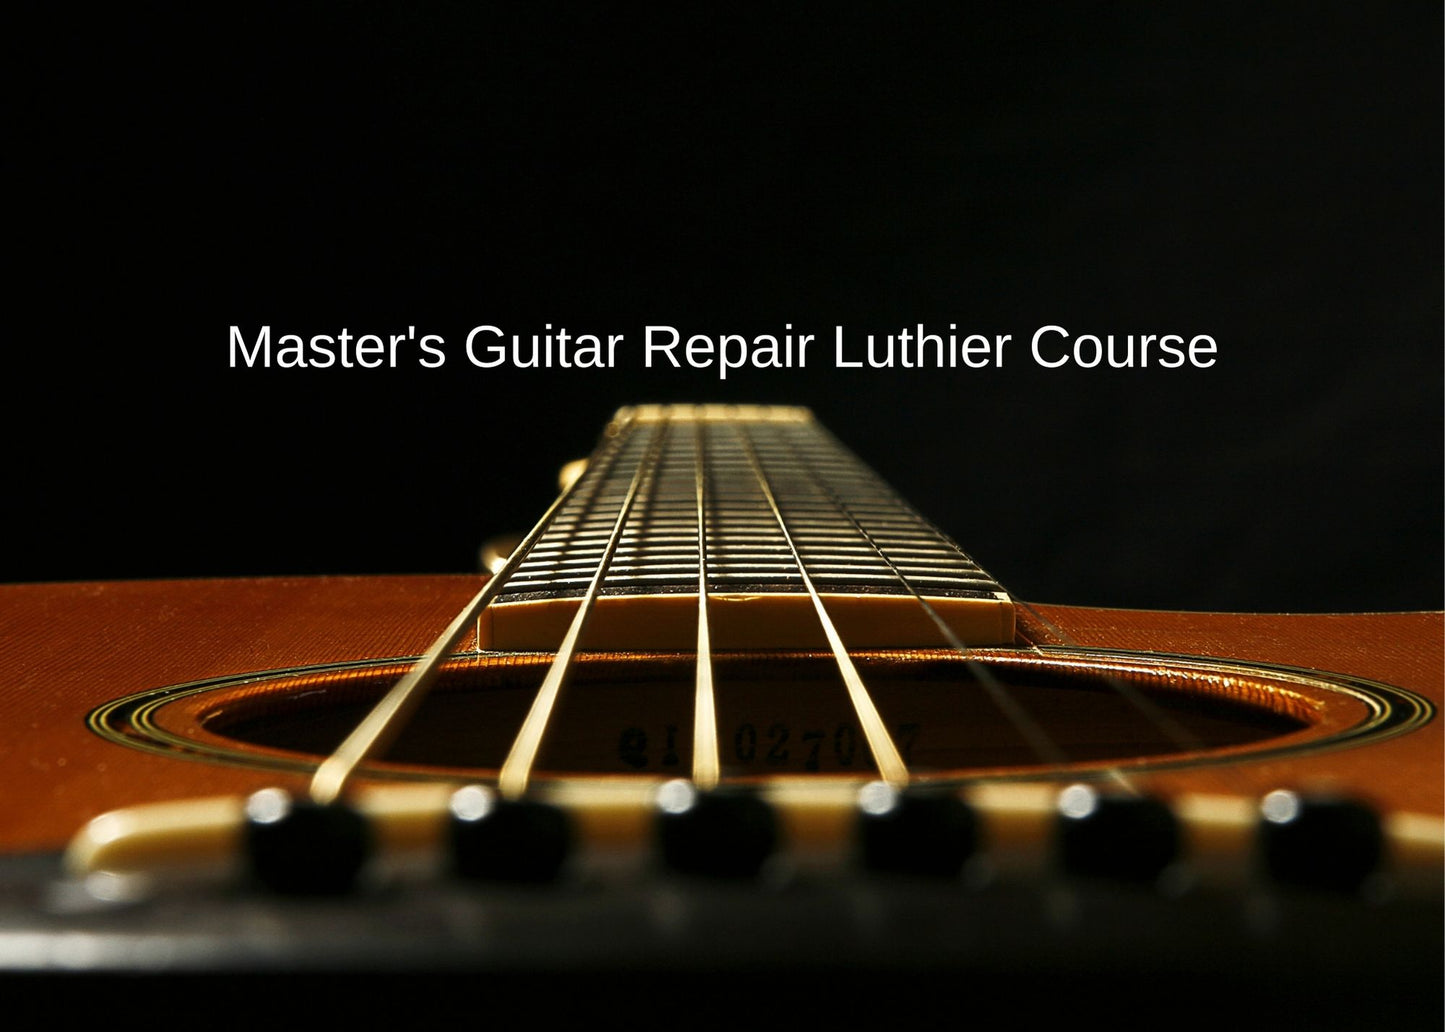 Master's Guitar Repair Luthier Program at Guitar Repair Academy